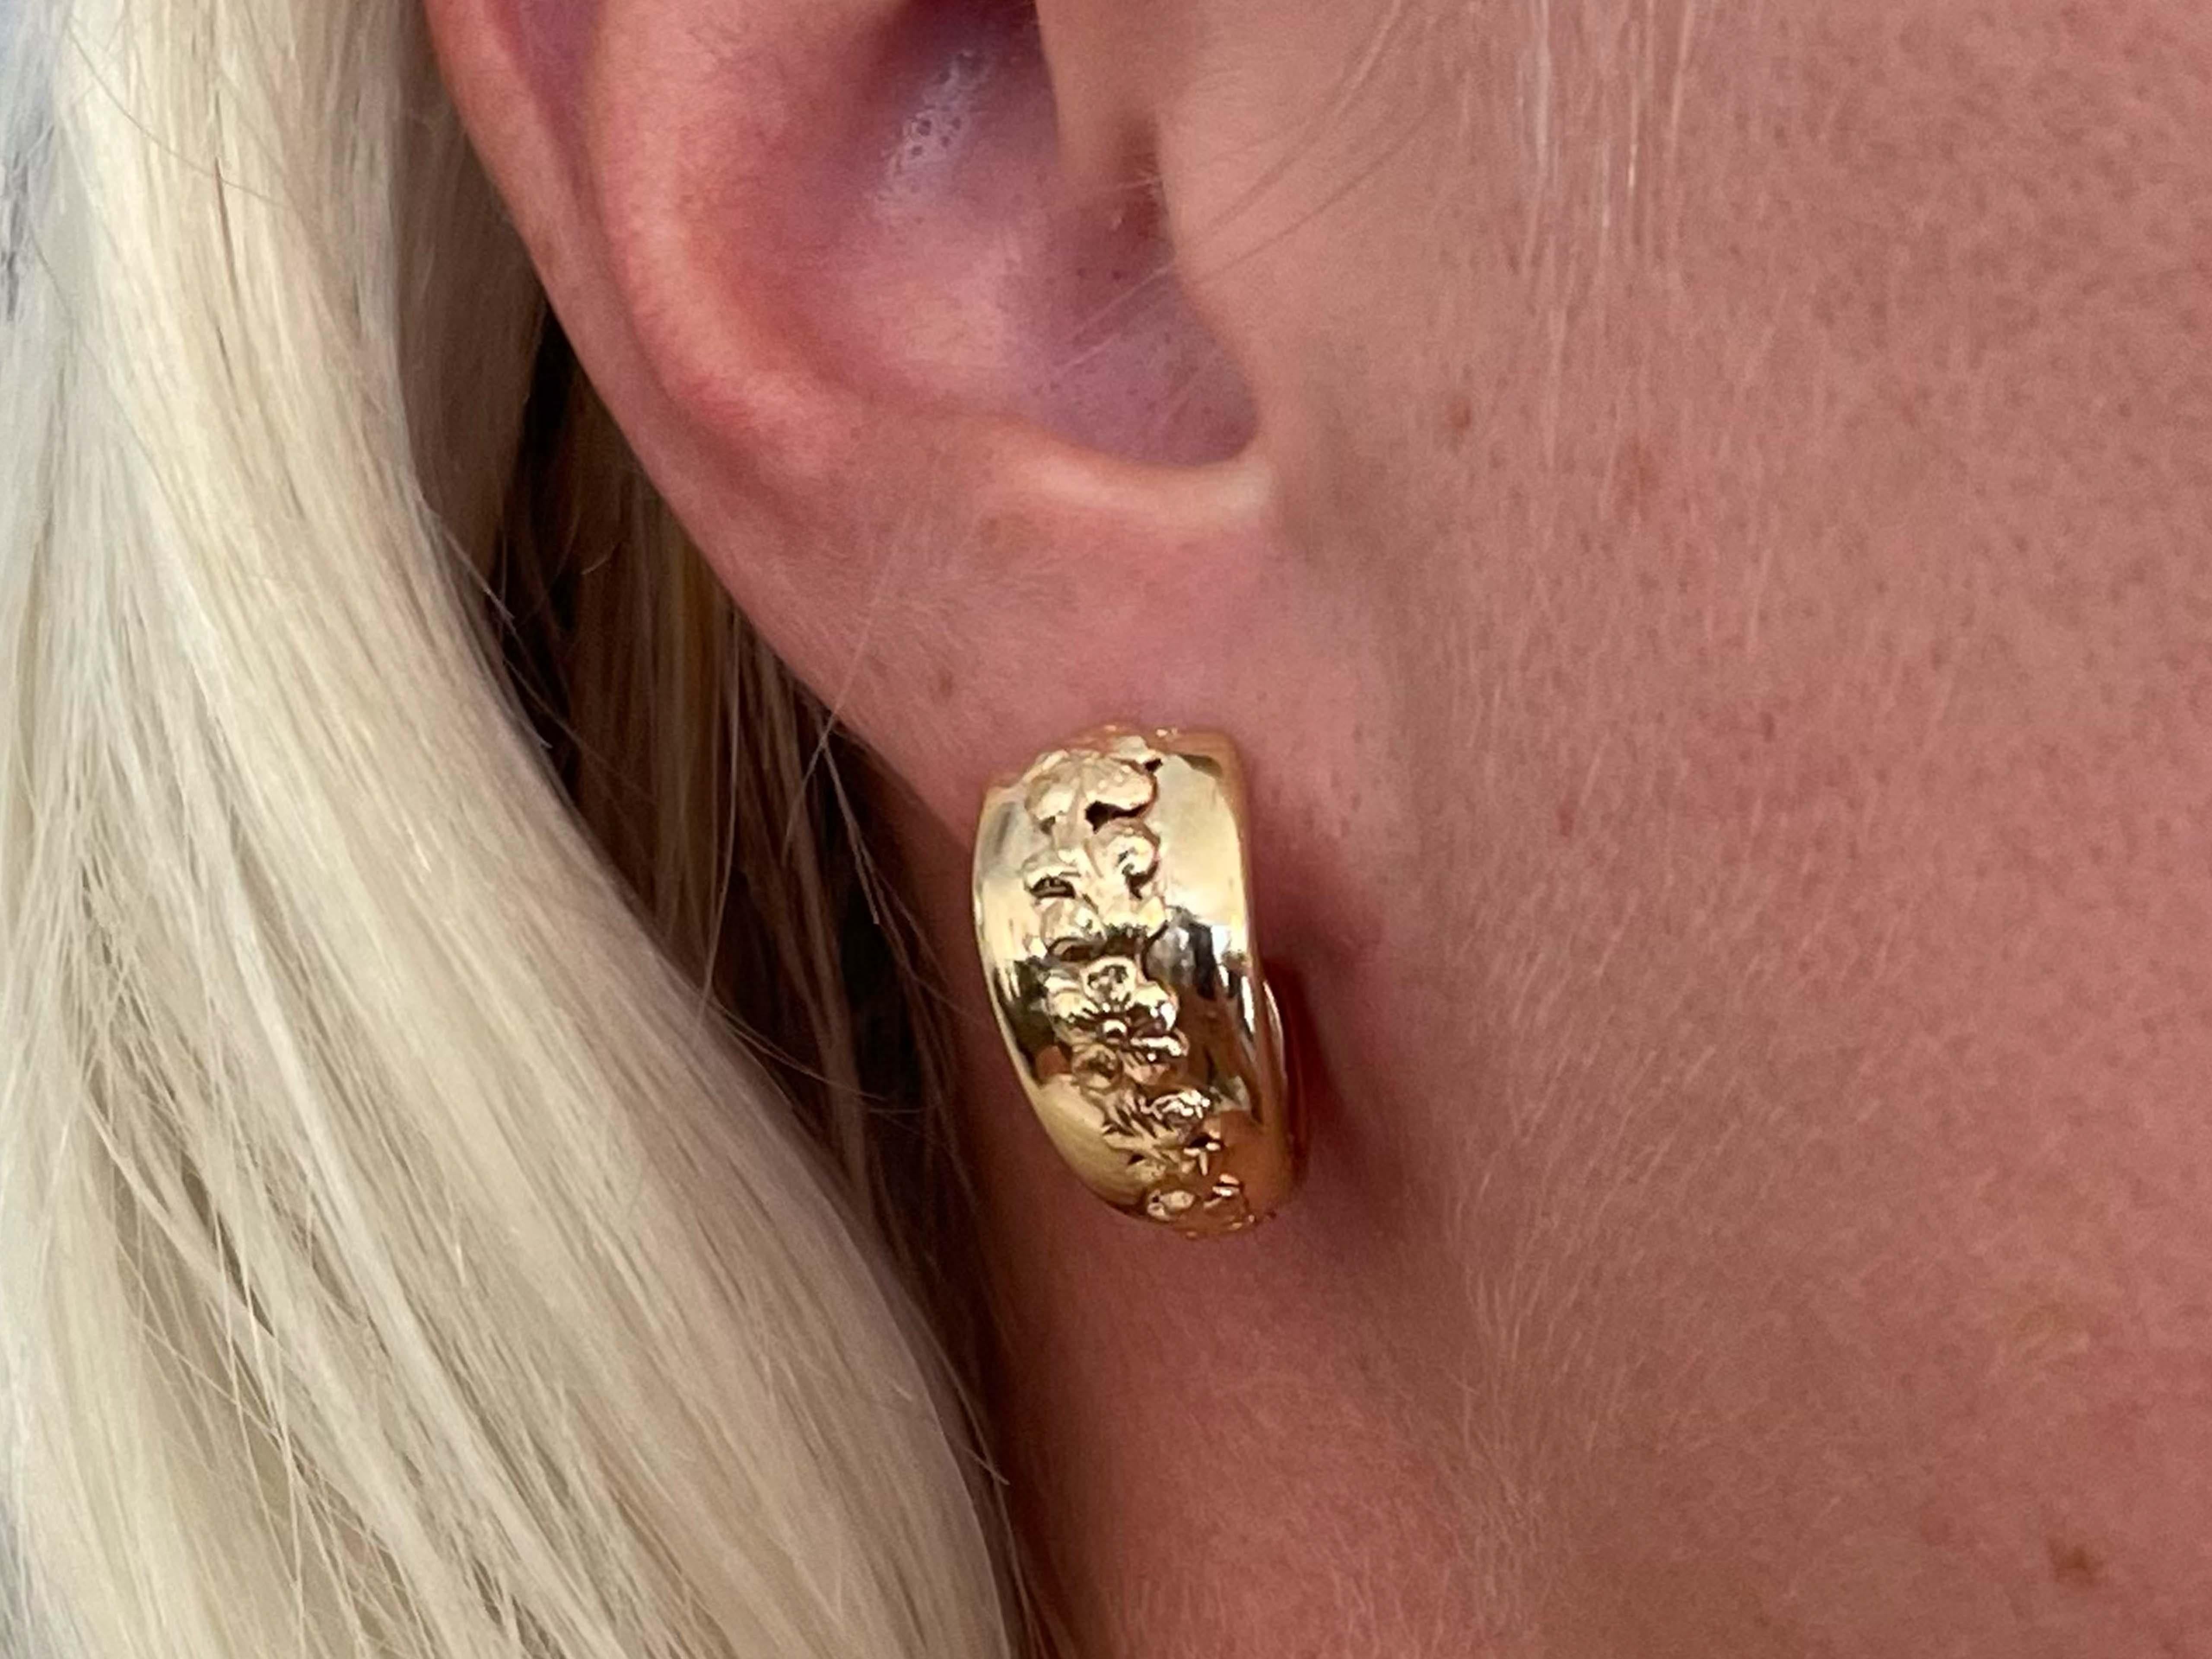 Boucles d'oreilles Spécifications :

Designer : Ming's

Métal : Or jaune 14K

Poids total : 7,7 grammes

Diamètre de l'anneau : 21,72 mm

Estampillé : 